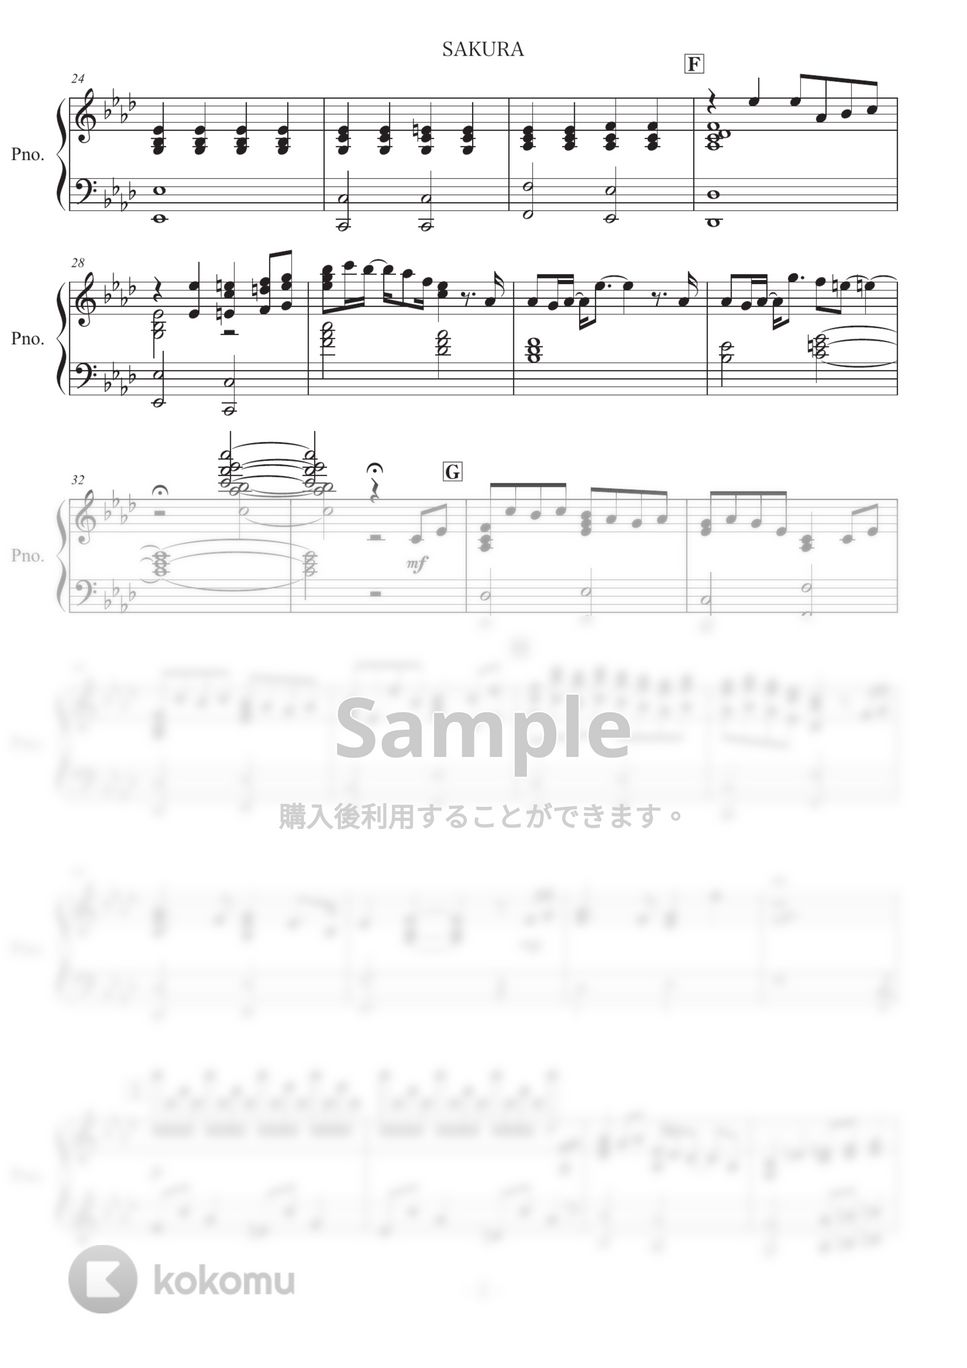 いきものがかり - SAKURA (卒業式 / ピアノ / BGM演奏用) by コギト